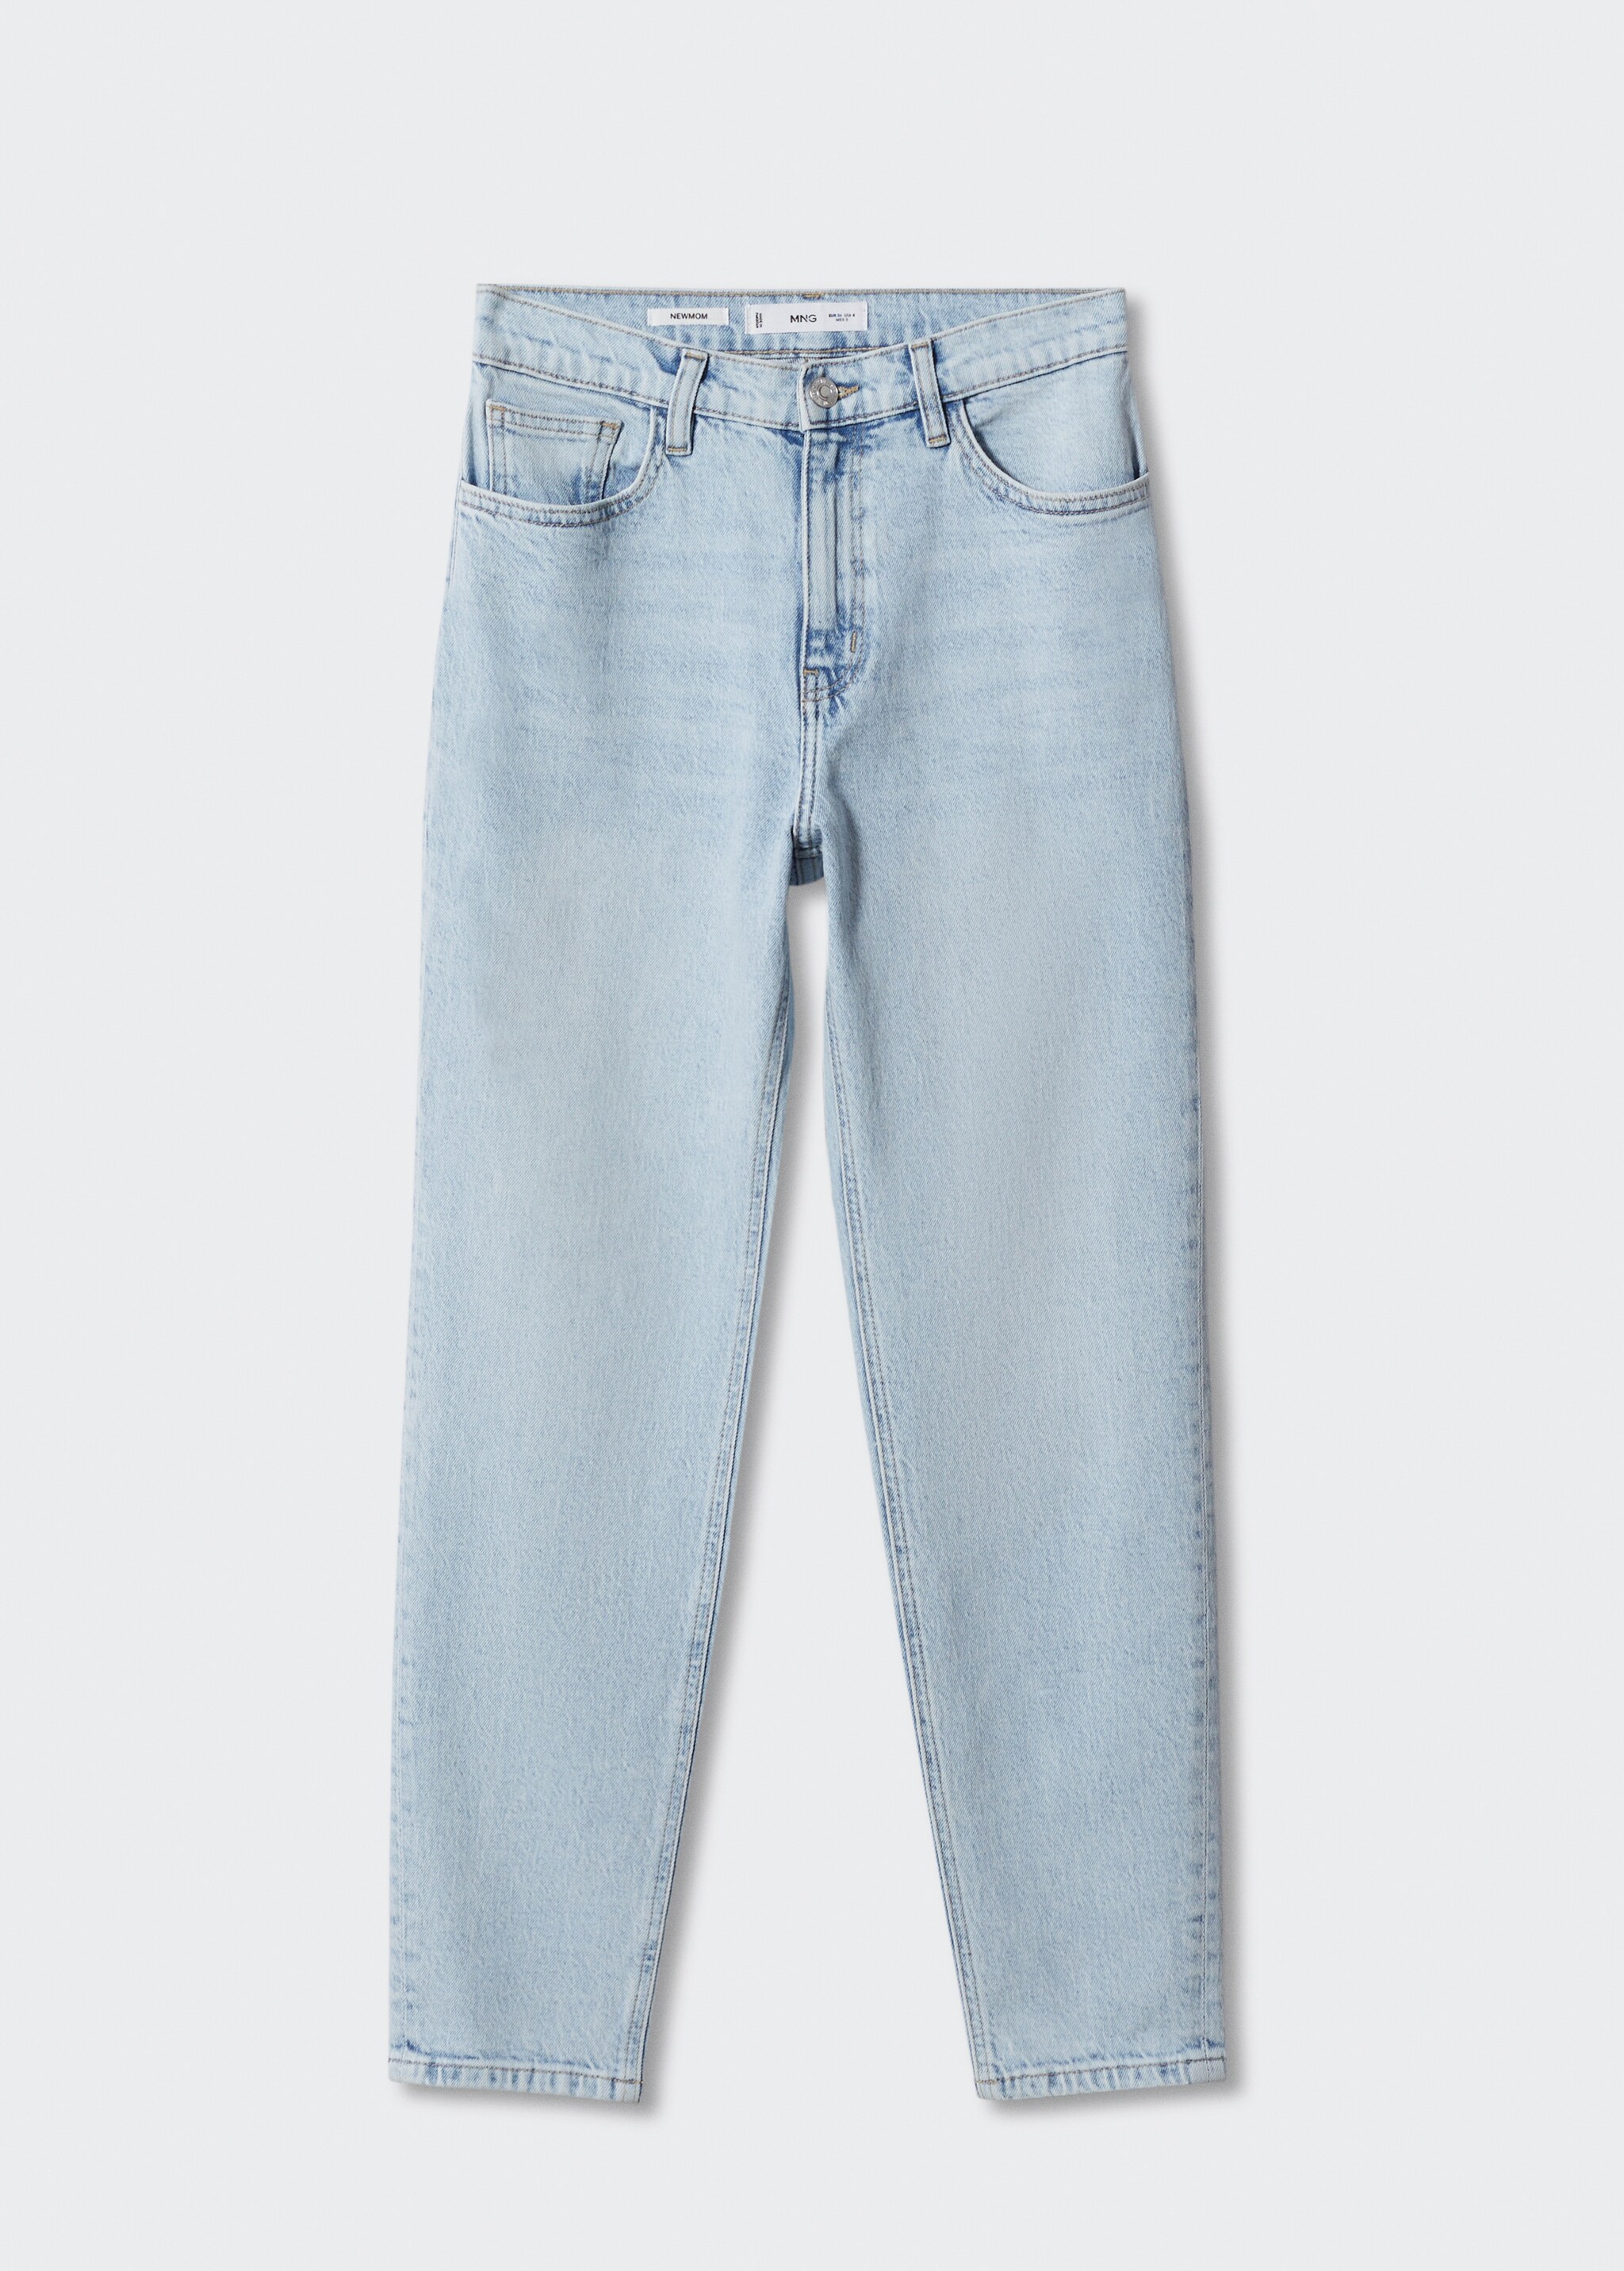 Jeans Newmom comfort med høyt liv - Artikkel uten modell